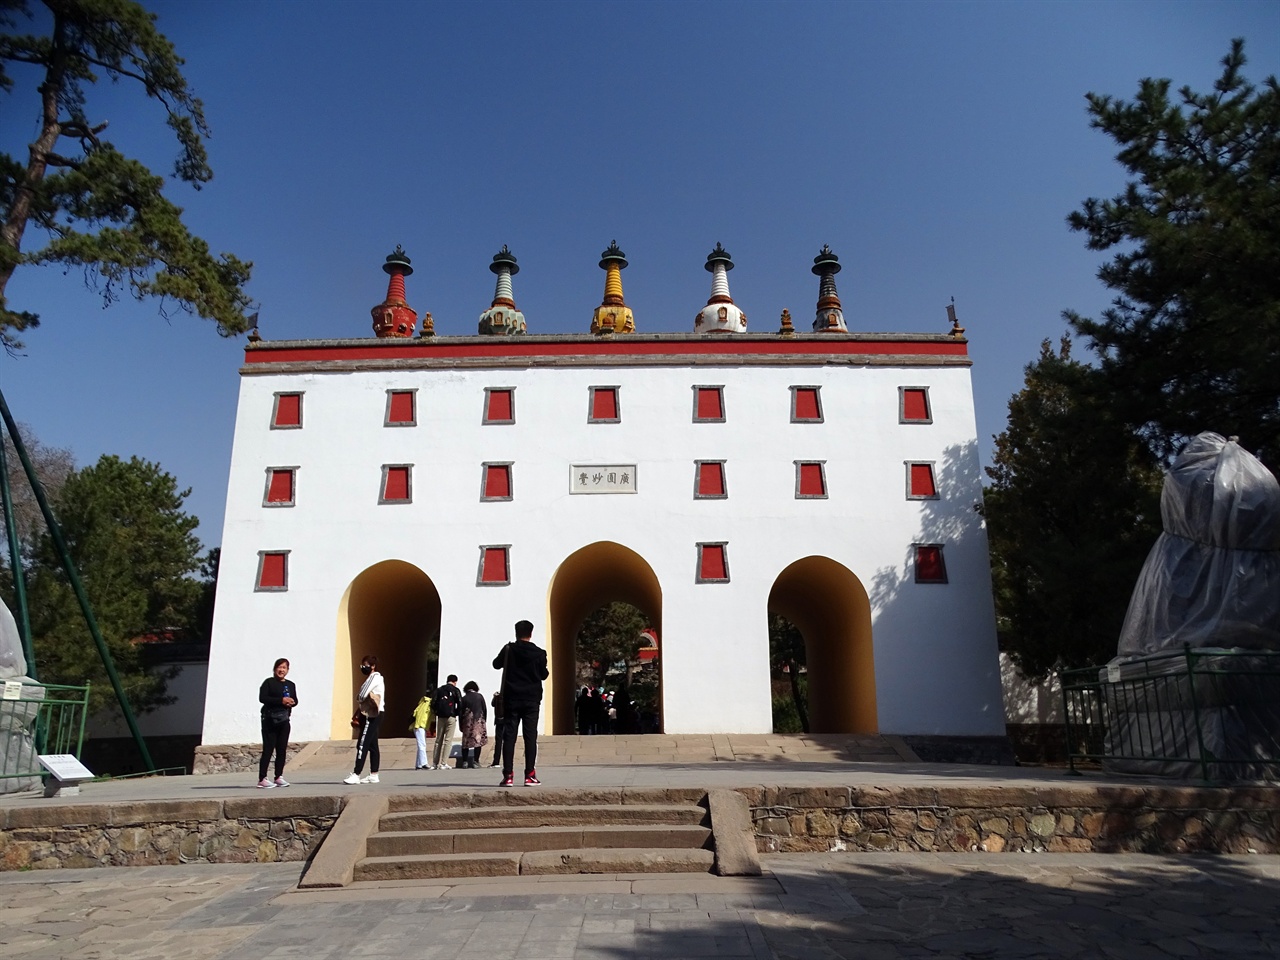 세 개의 아치형 문이 있는 티베트식 흰 건물 위에 다섯 개의 탑이 세워져 있어 오탑문이라 한다.